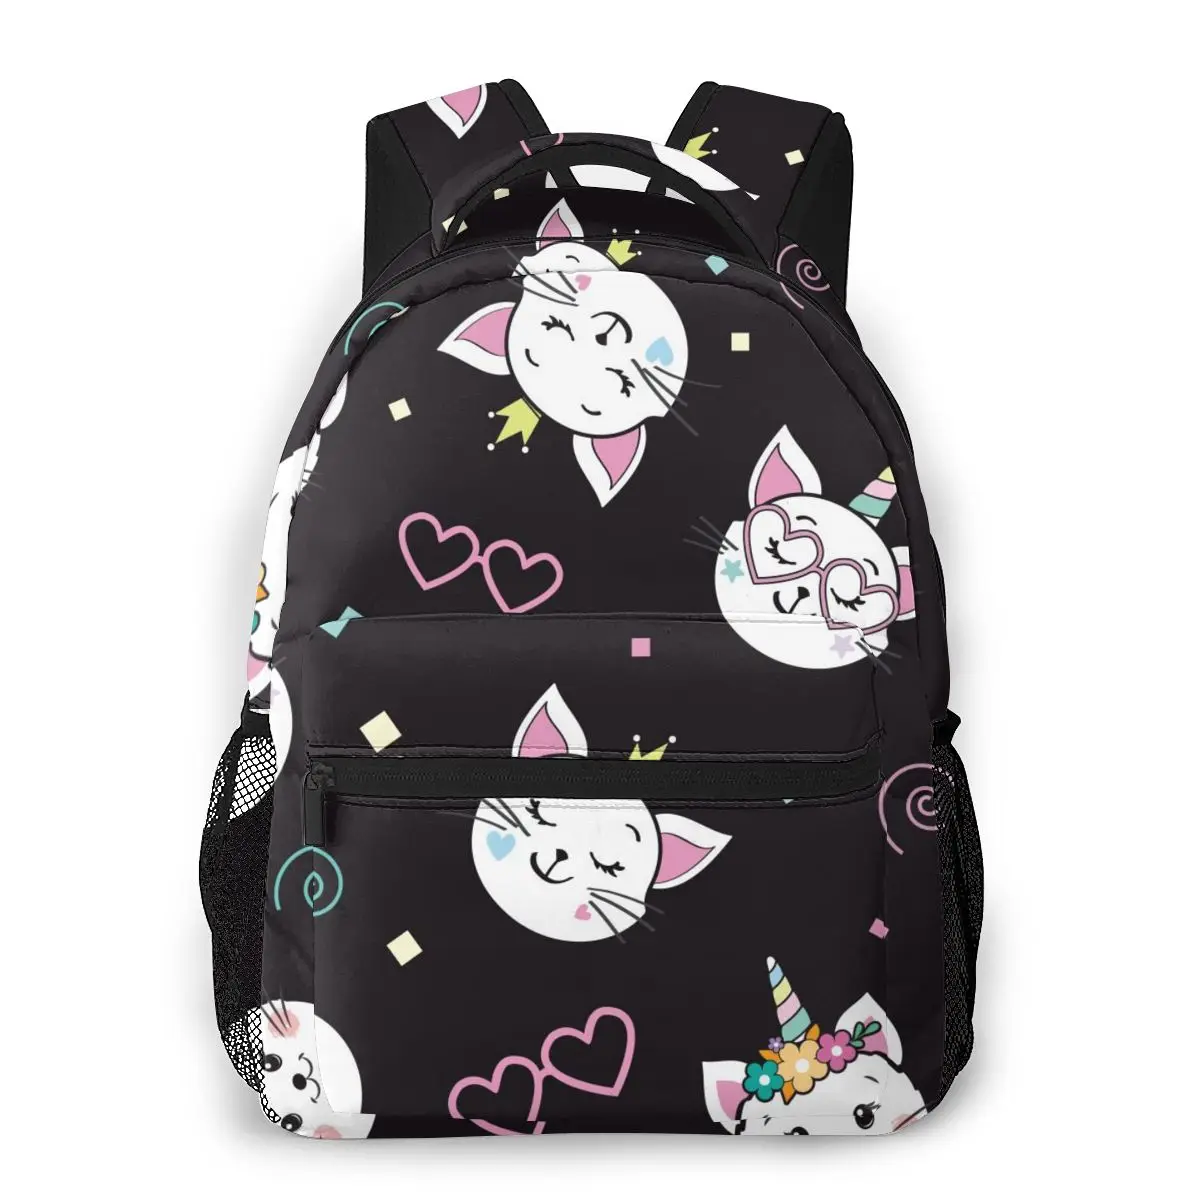 

2020 OLN дорожные рюкзаки милый забавный кот Единорог девушка рюкзак для женщин большая емкость школьная сумка для подростков